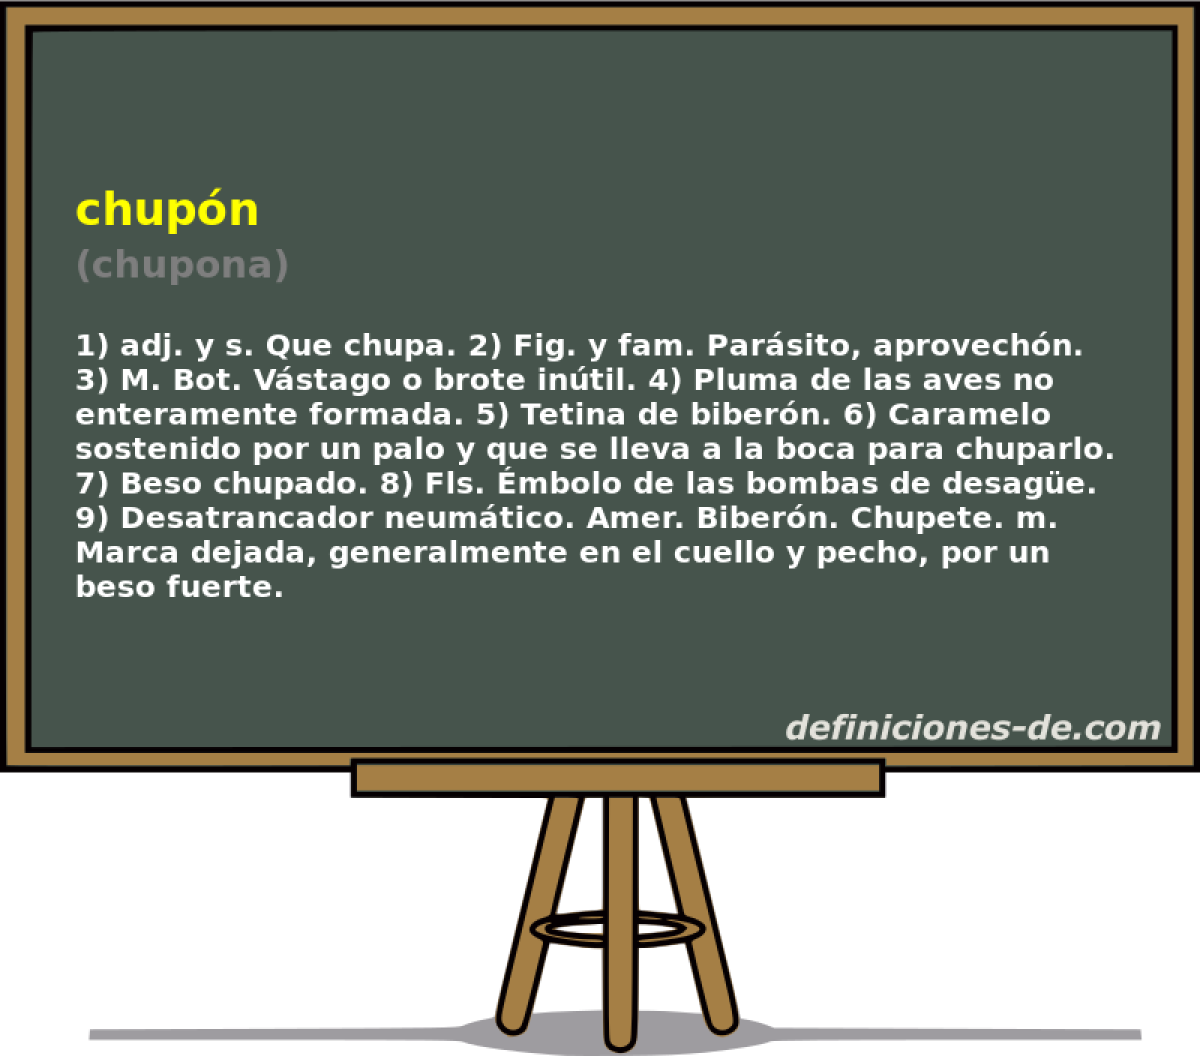 chupn (chupona)